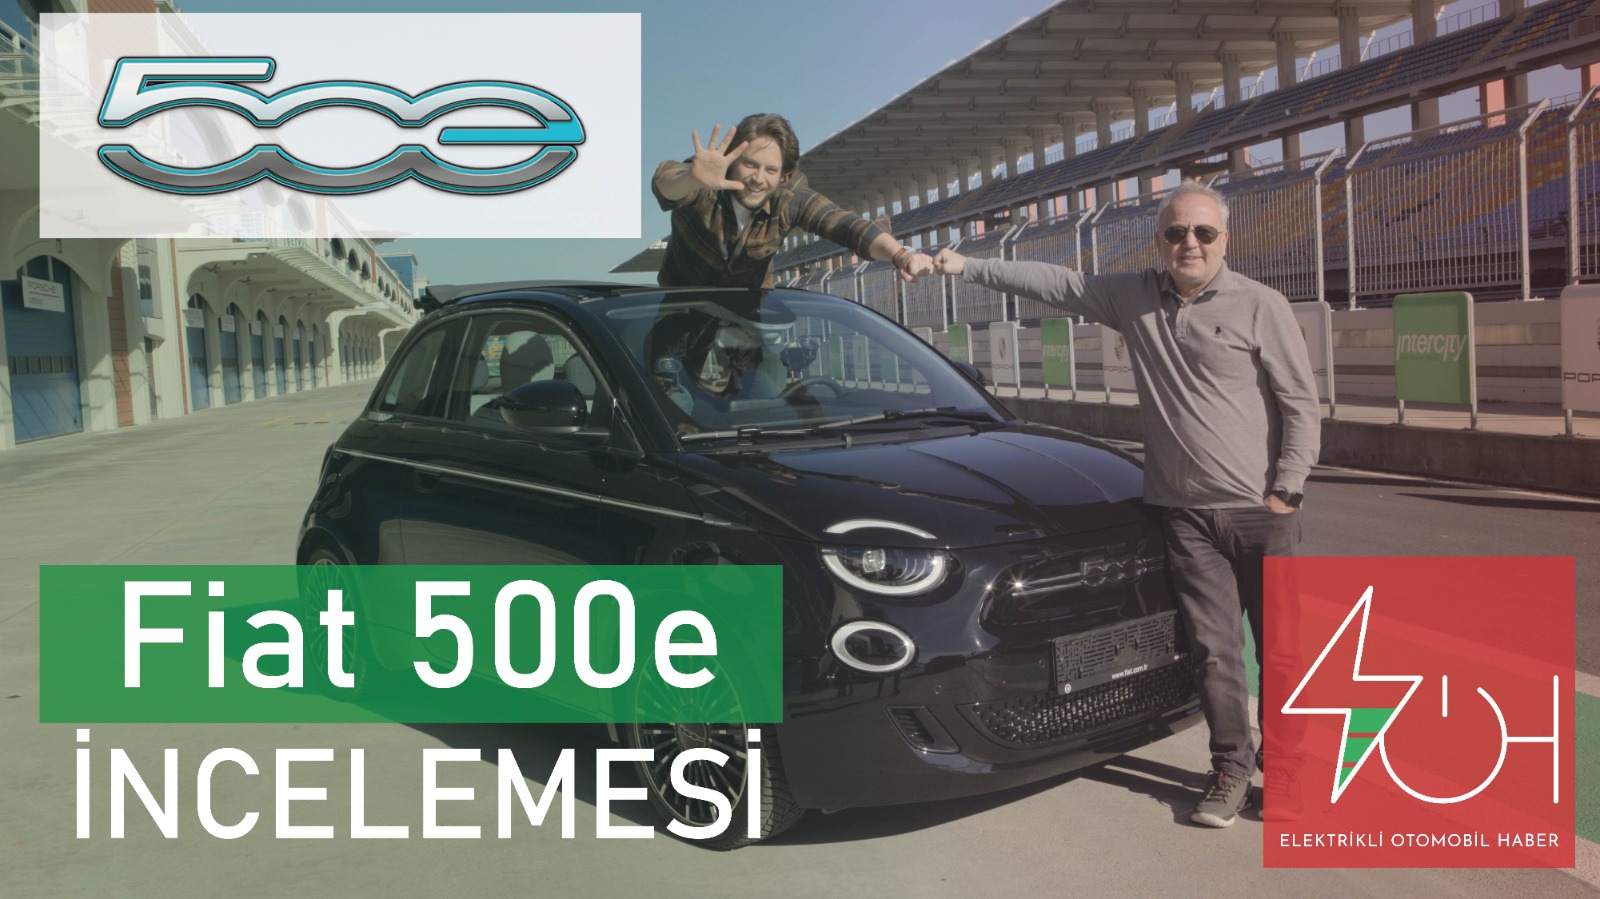 FIAT 500e'NİN TÜRKİYE'DEKİ İLK İNCELEME VİDEOSU YAYINDA